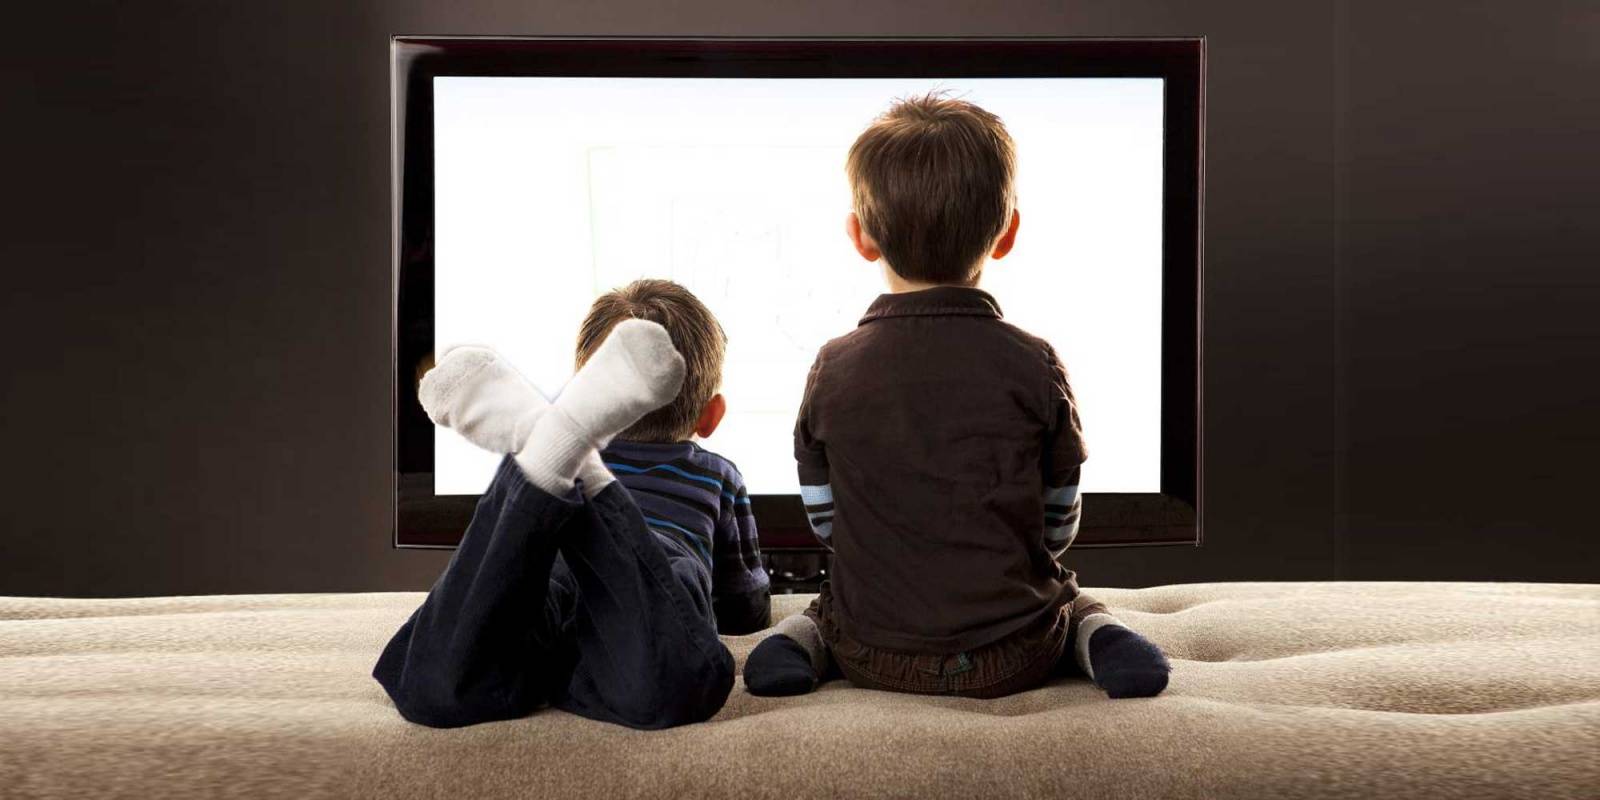 Вред телевизора: влияние на здоровье человека, плюсы и минусы